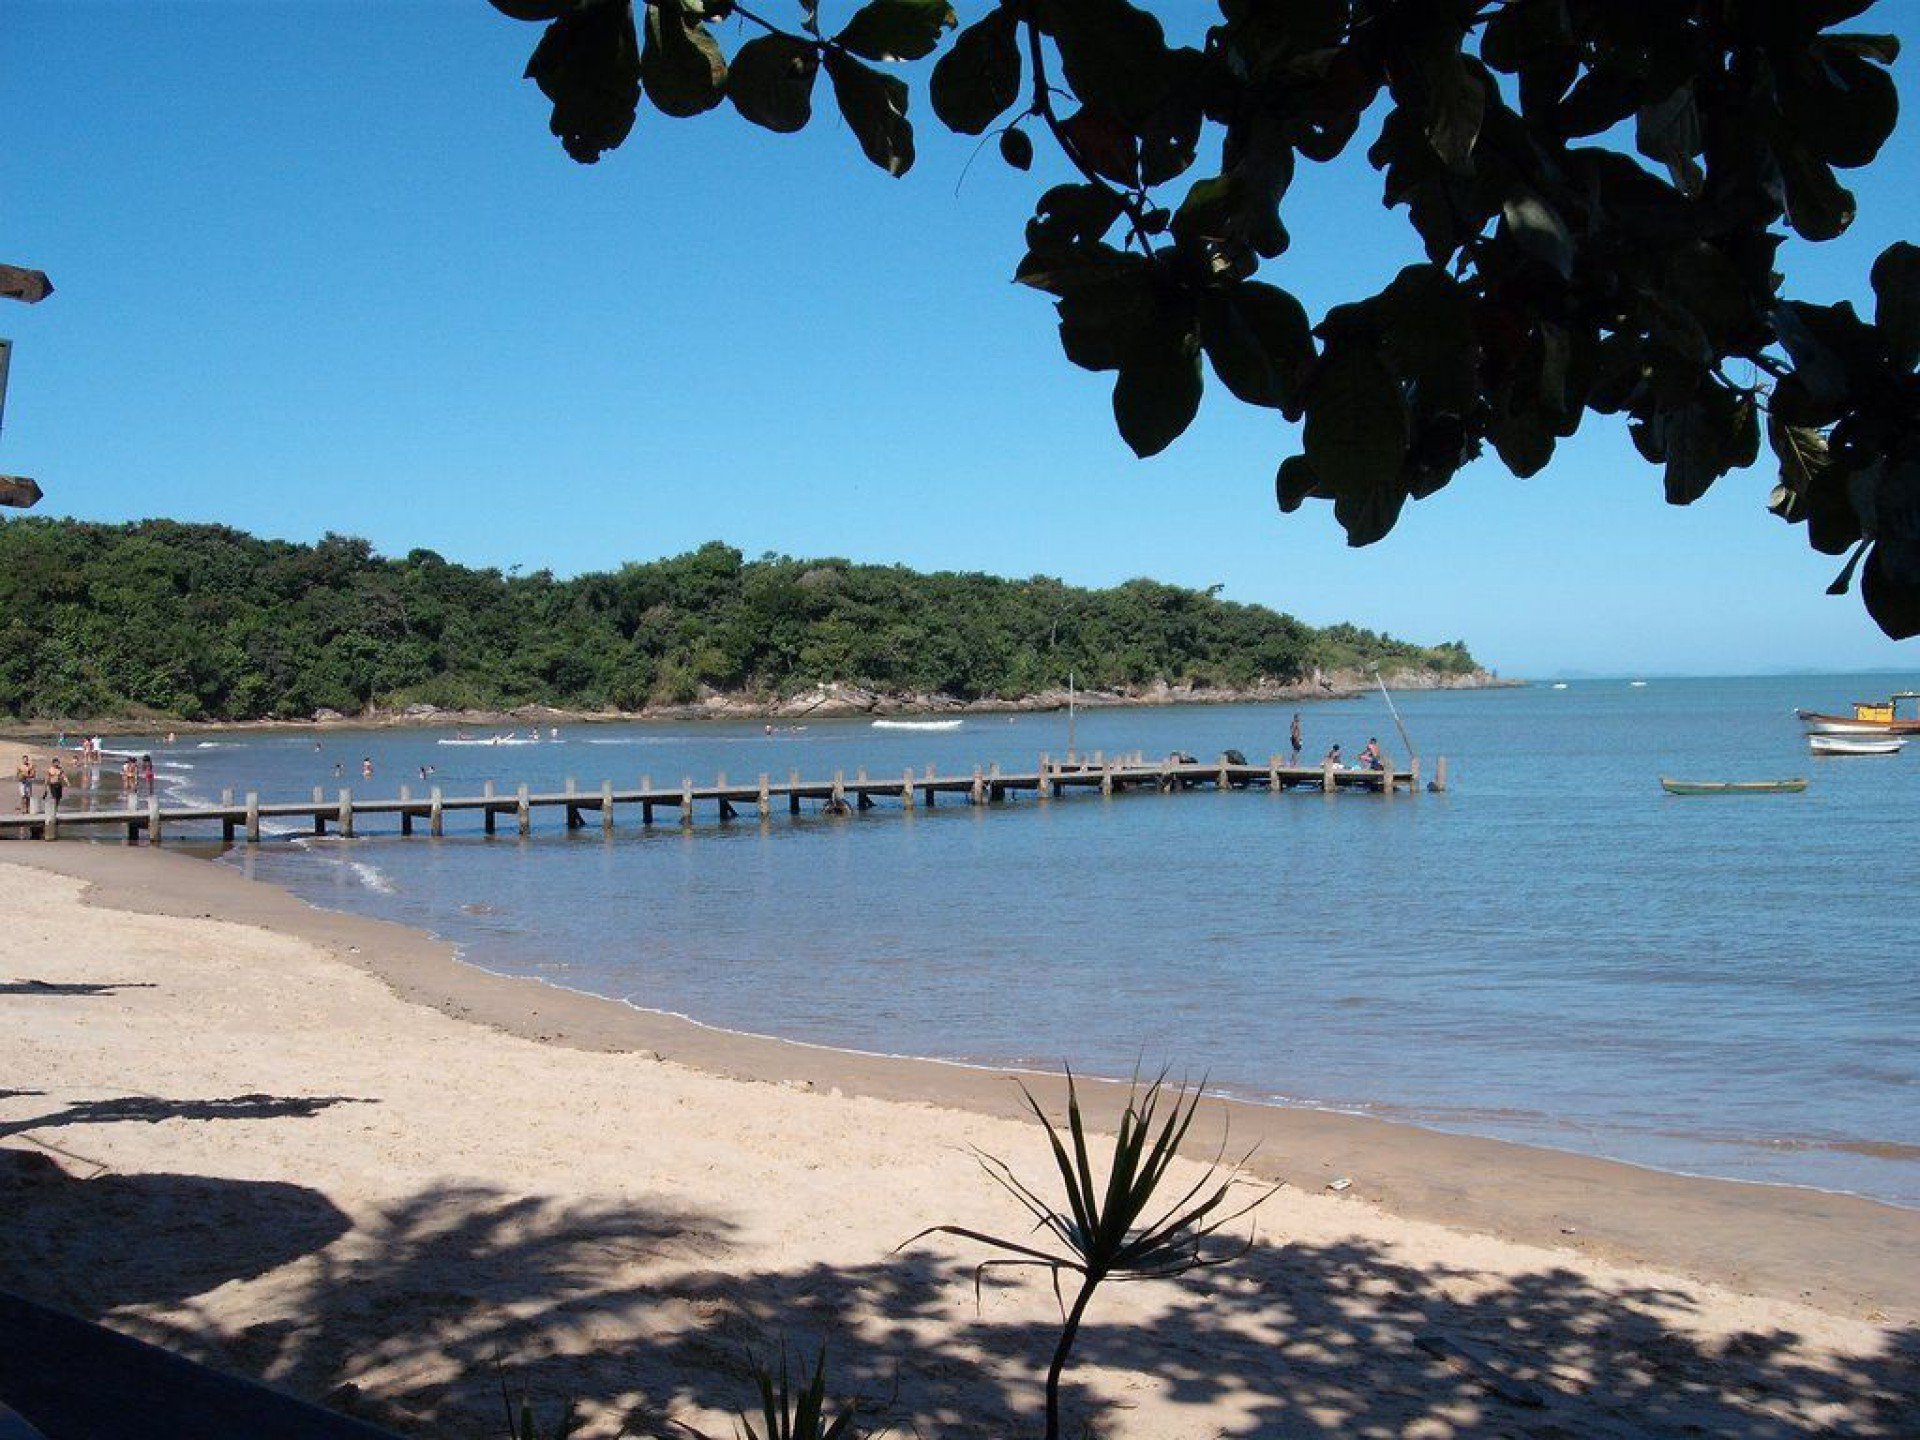 Paradisíaca, calma e bela, essa é a praia da Boca da Barra, localizada em Rio das Ostras - RJ - Reprodução Internet